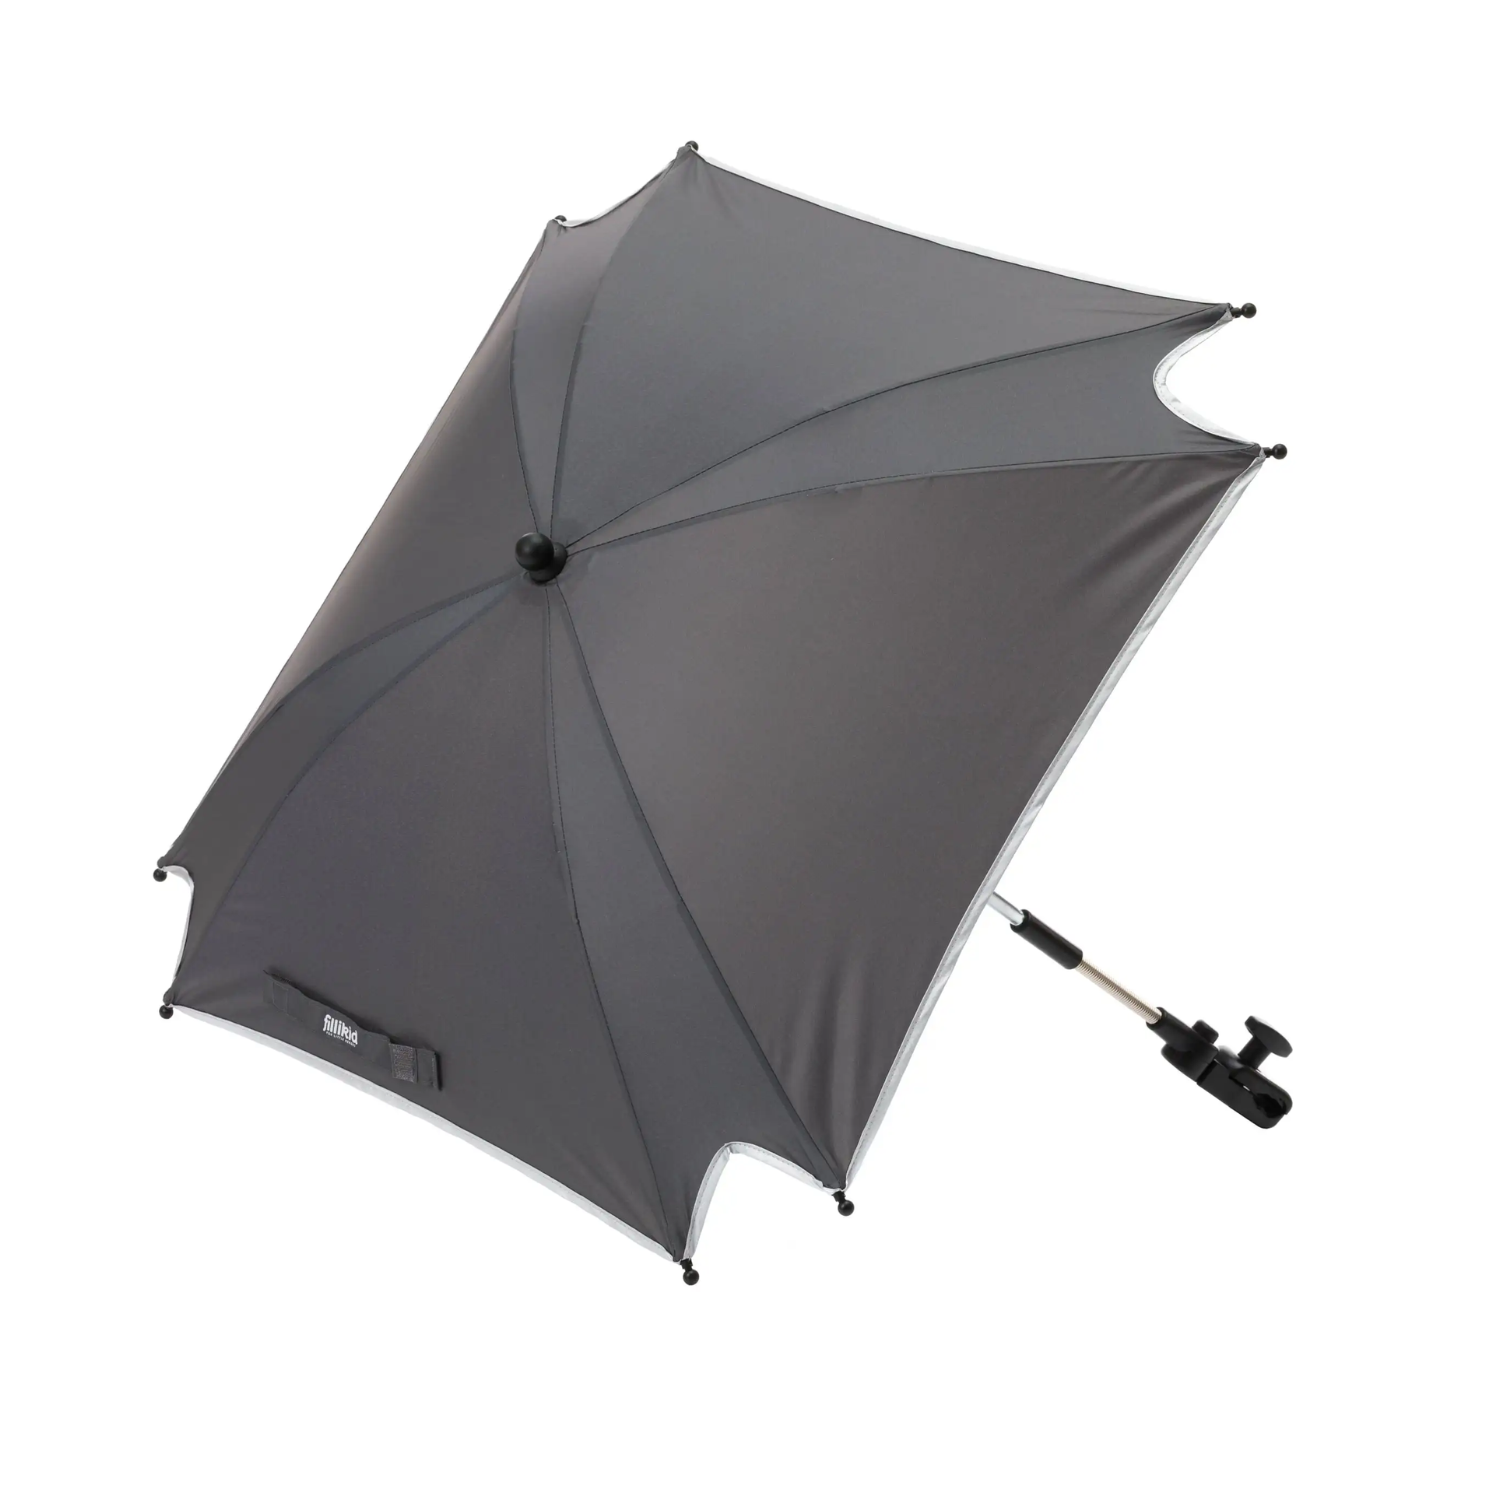 Umbrela cu protectie UV 50 +, Grey, 80 cm, Fillikid